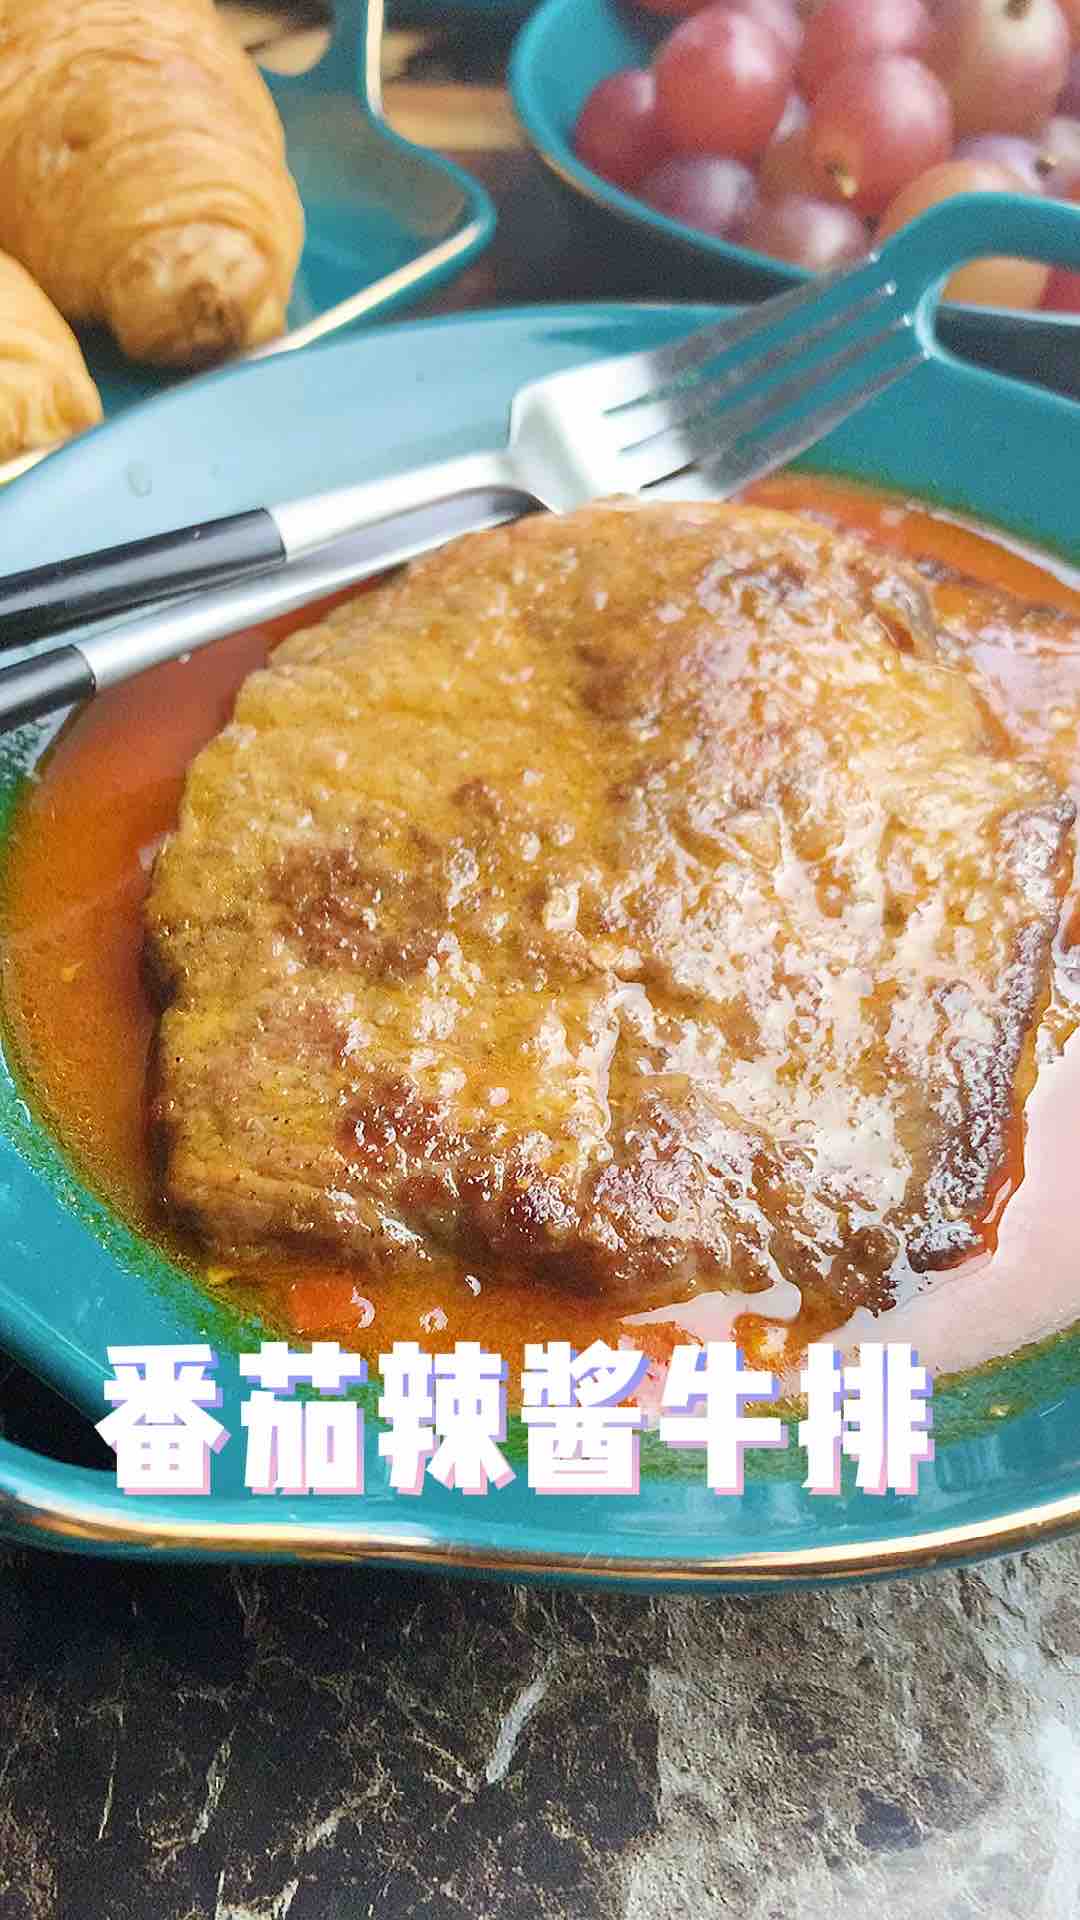 Steak with Tomato Sauce